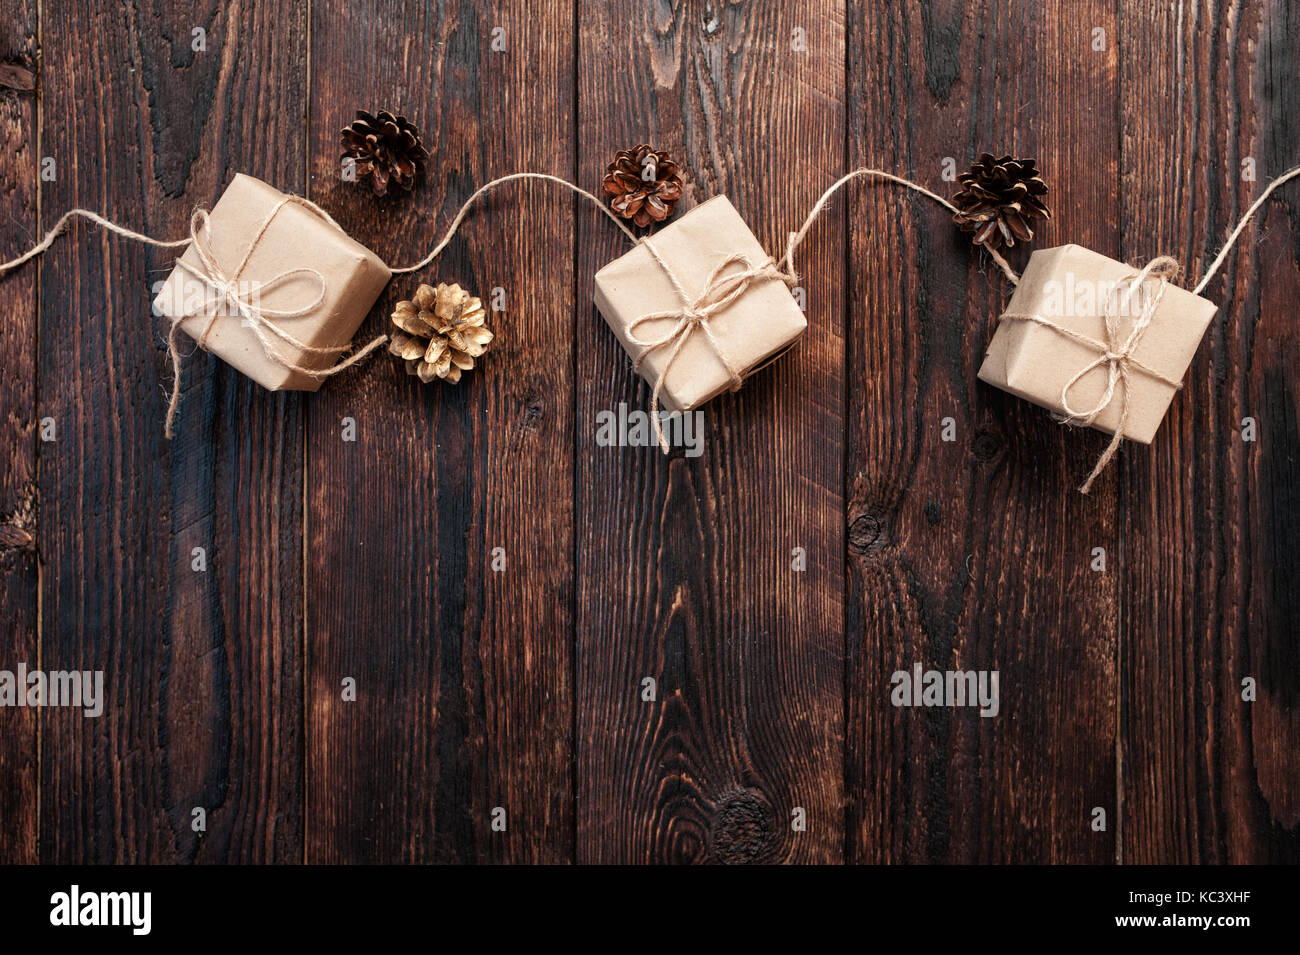 Composición de cajas de regalo de navidad y conos sobre un fondo de madera Foto de stock